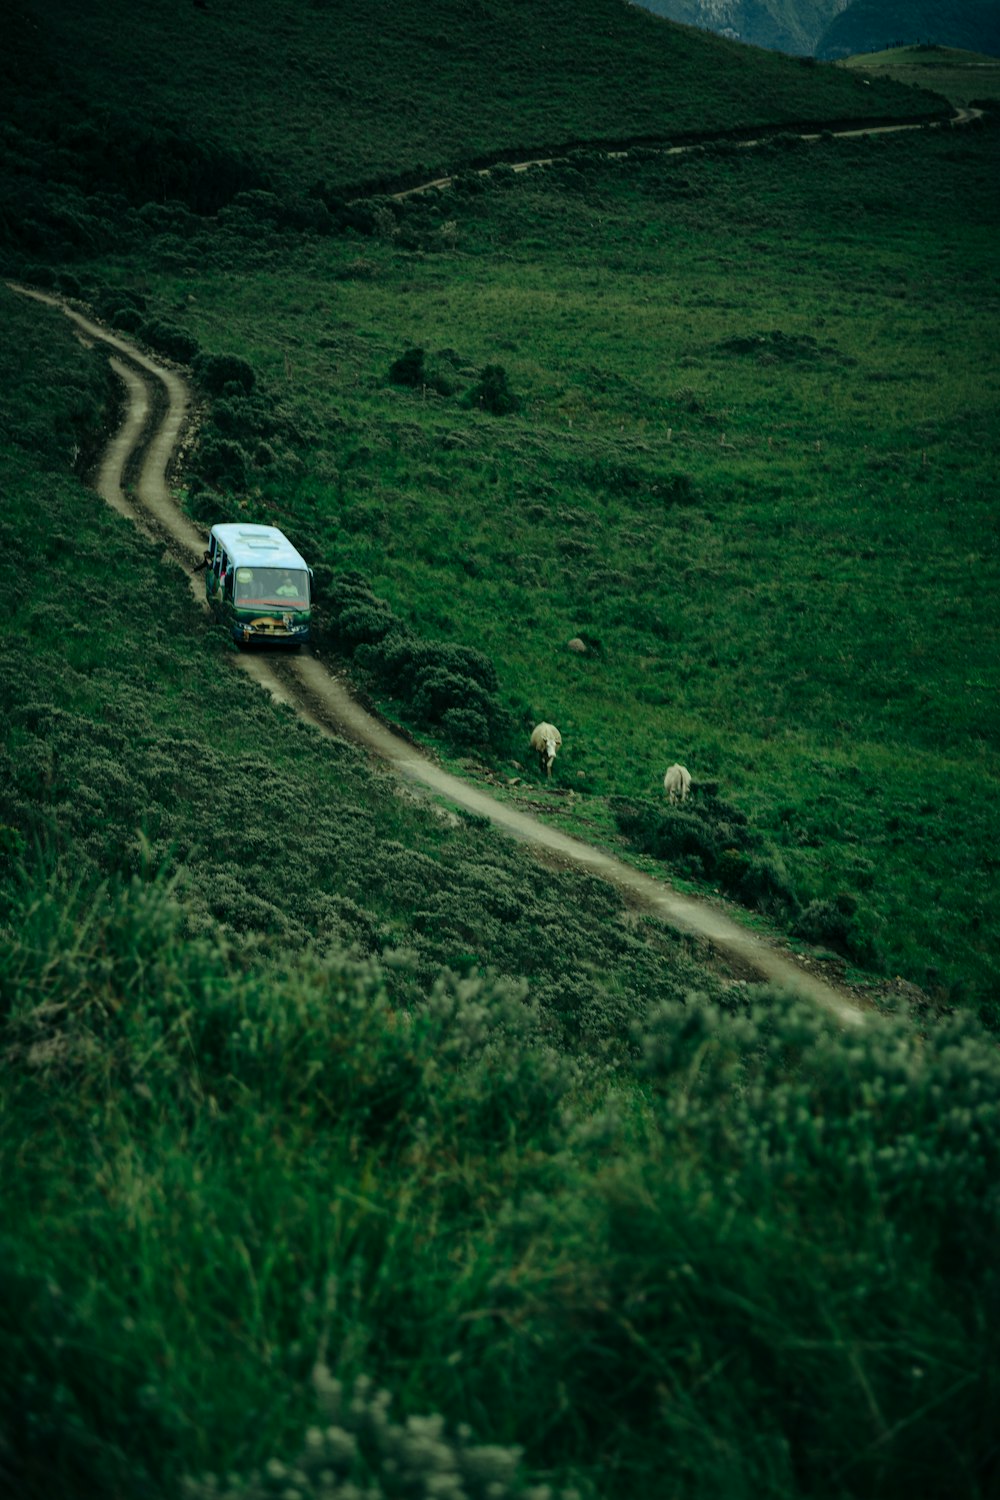 a truck driving down a dirt road through a lush green field